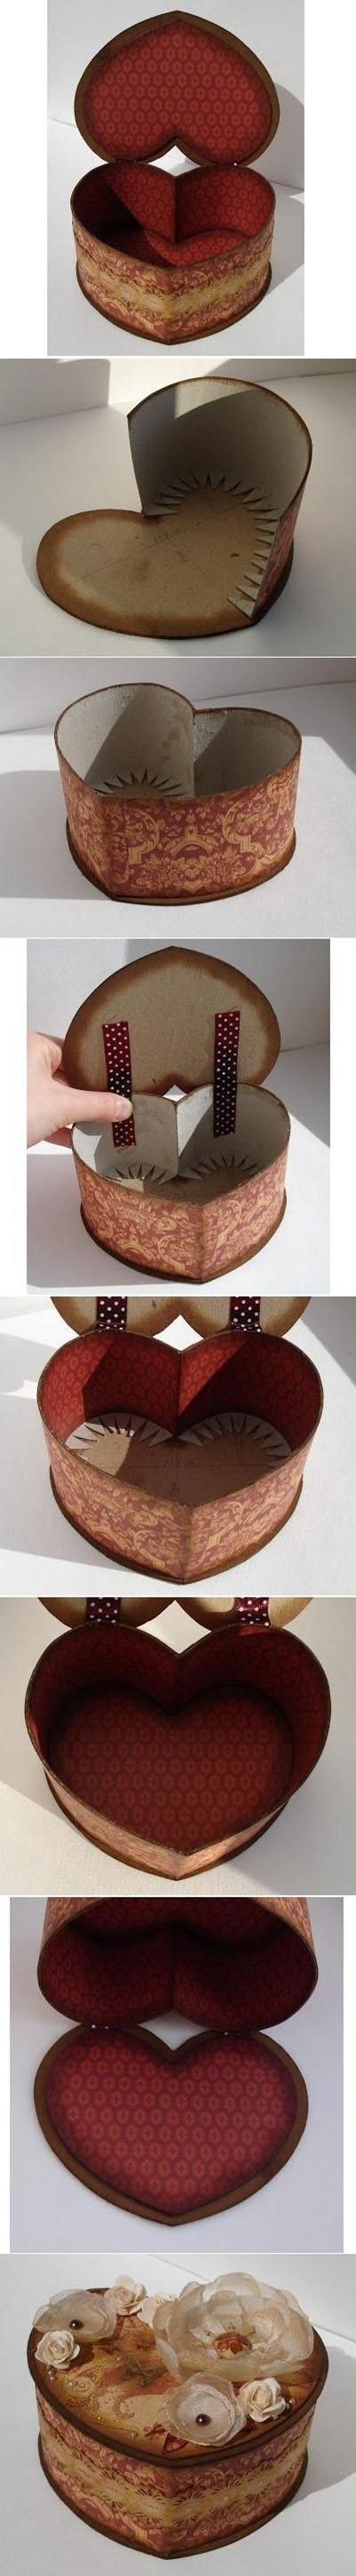 13  DIY Cardboard Heart Shaped Boxa0df